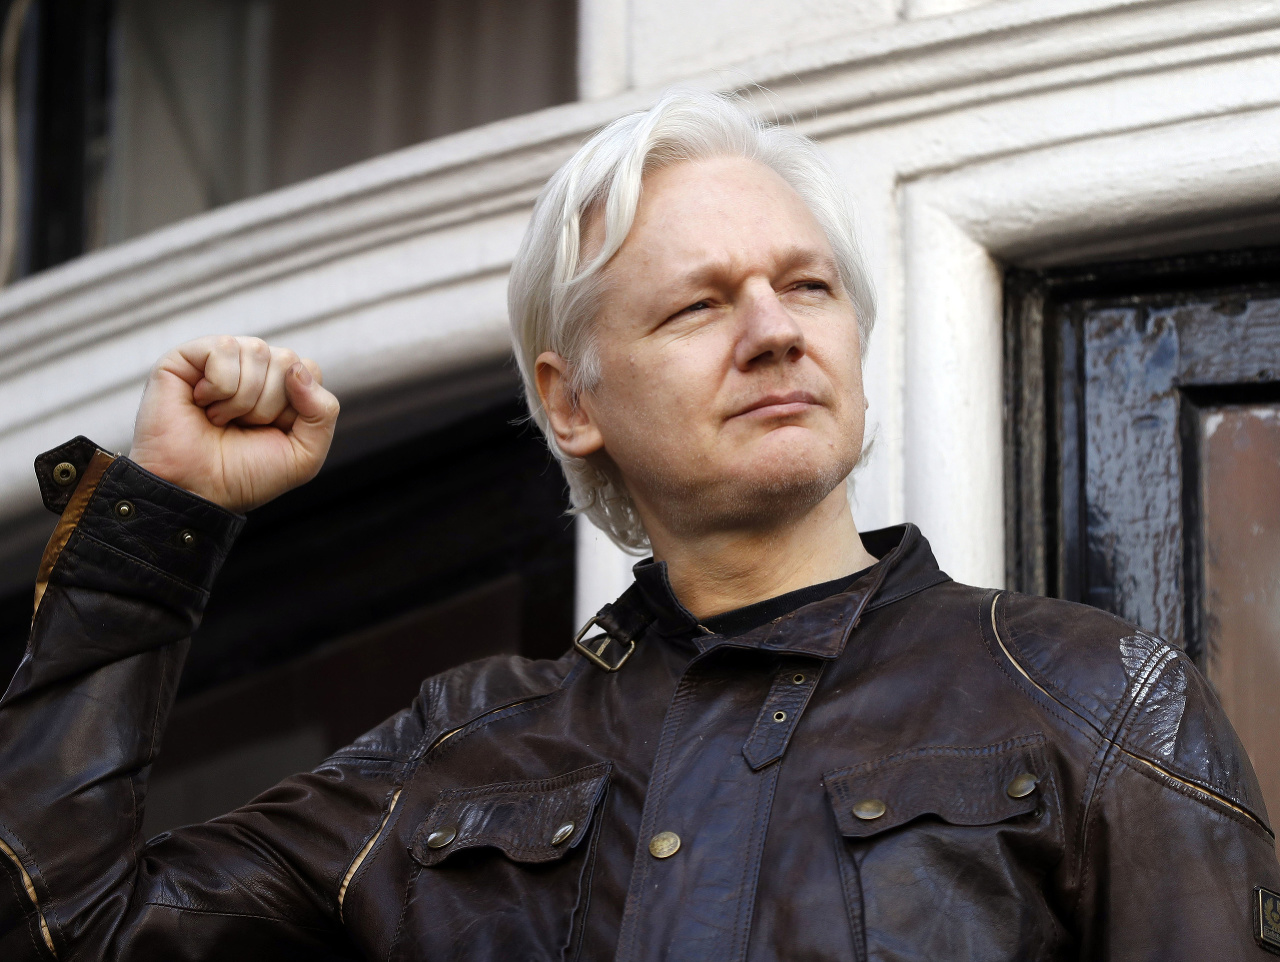 Súd odmietol odložiť pojednávanie o vydaní Assangea do USA